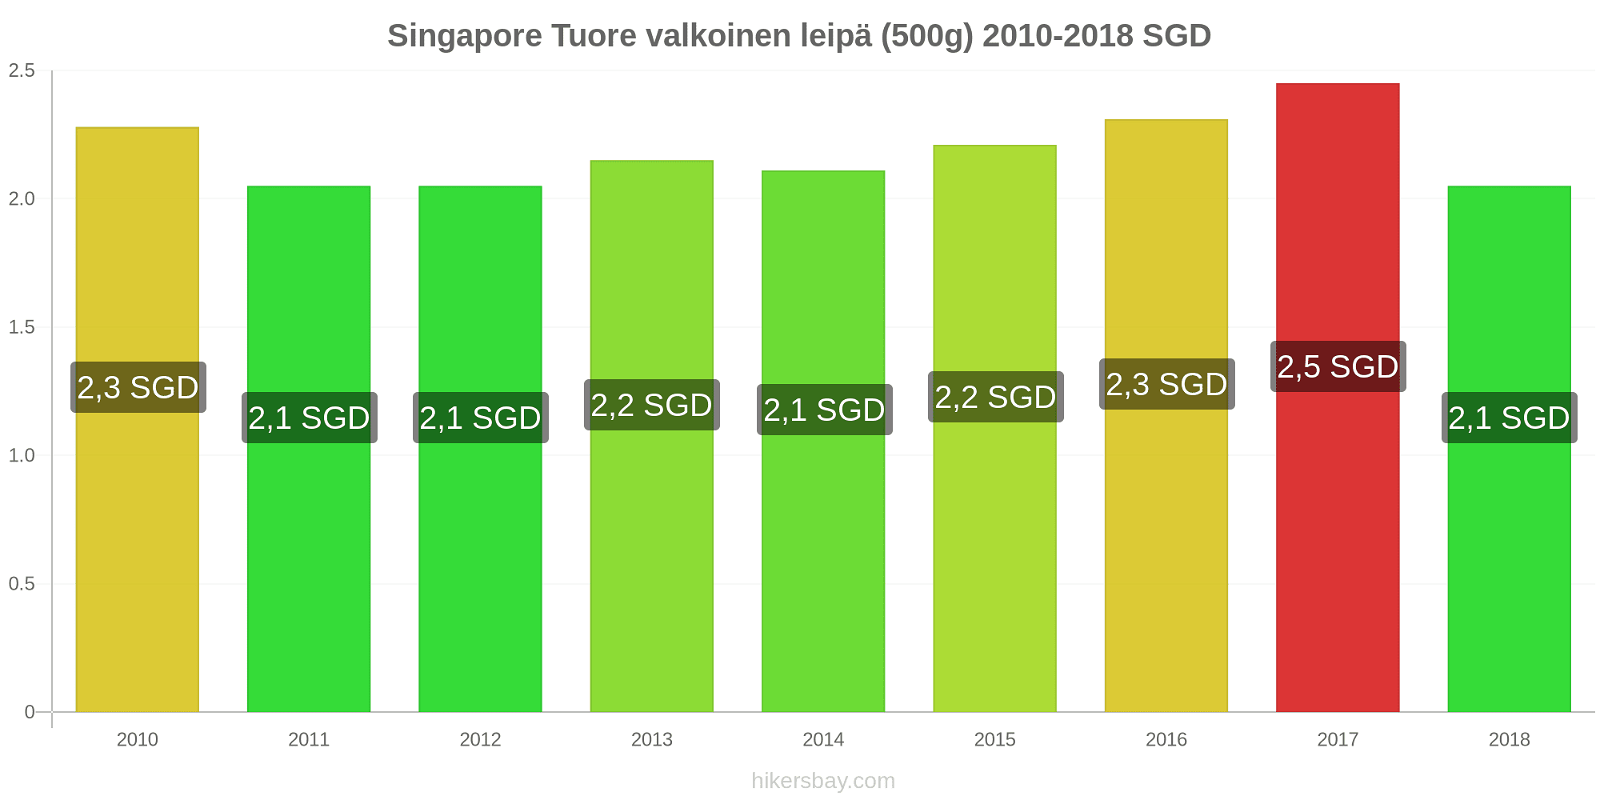 Singapore hintojen muutokset Tuore valkoinen leipä (500g) hikersbay.com